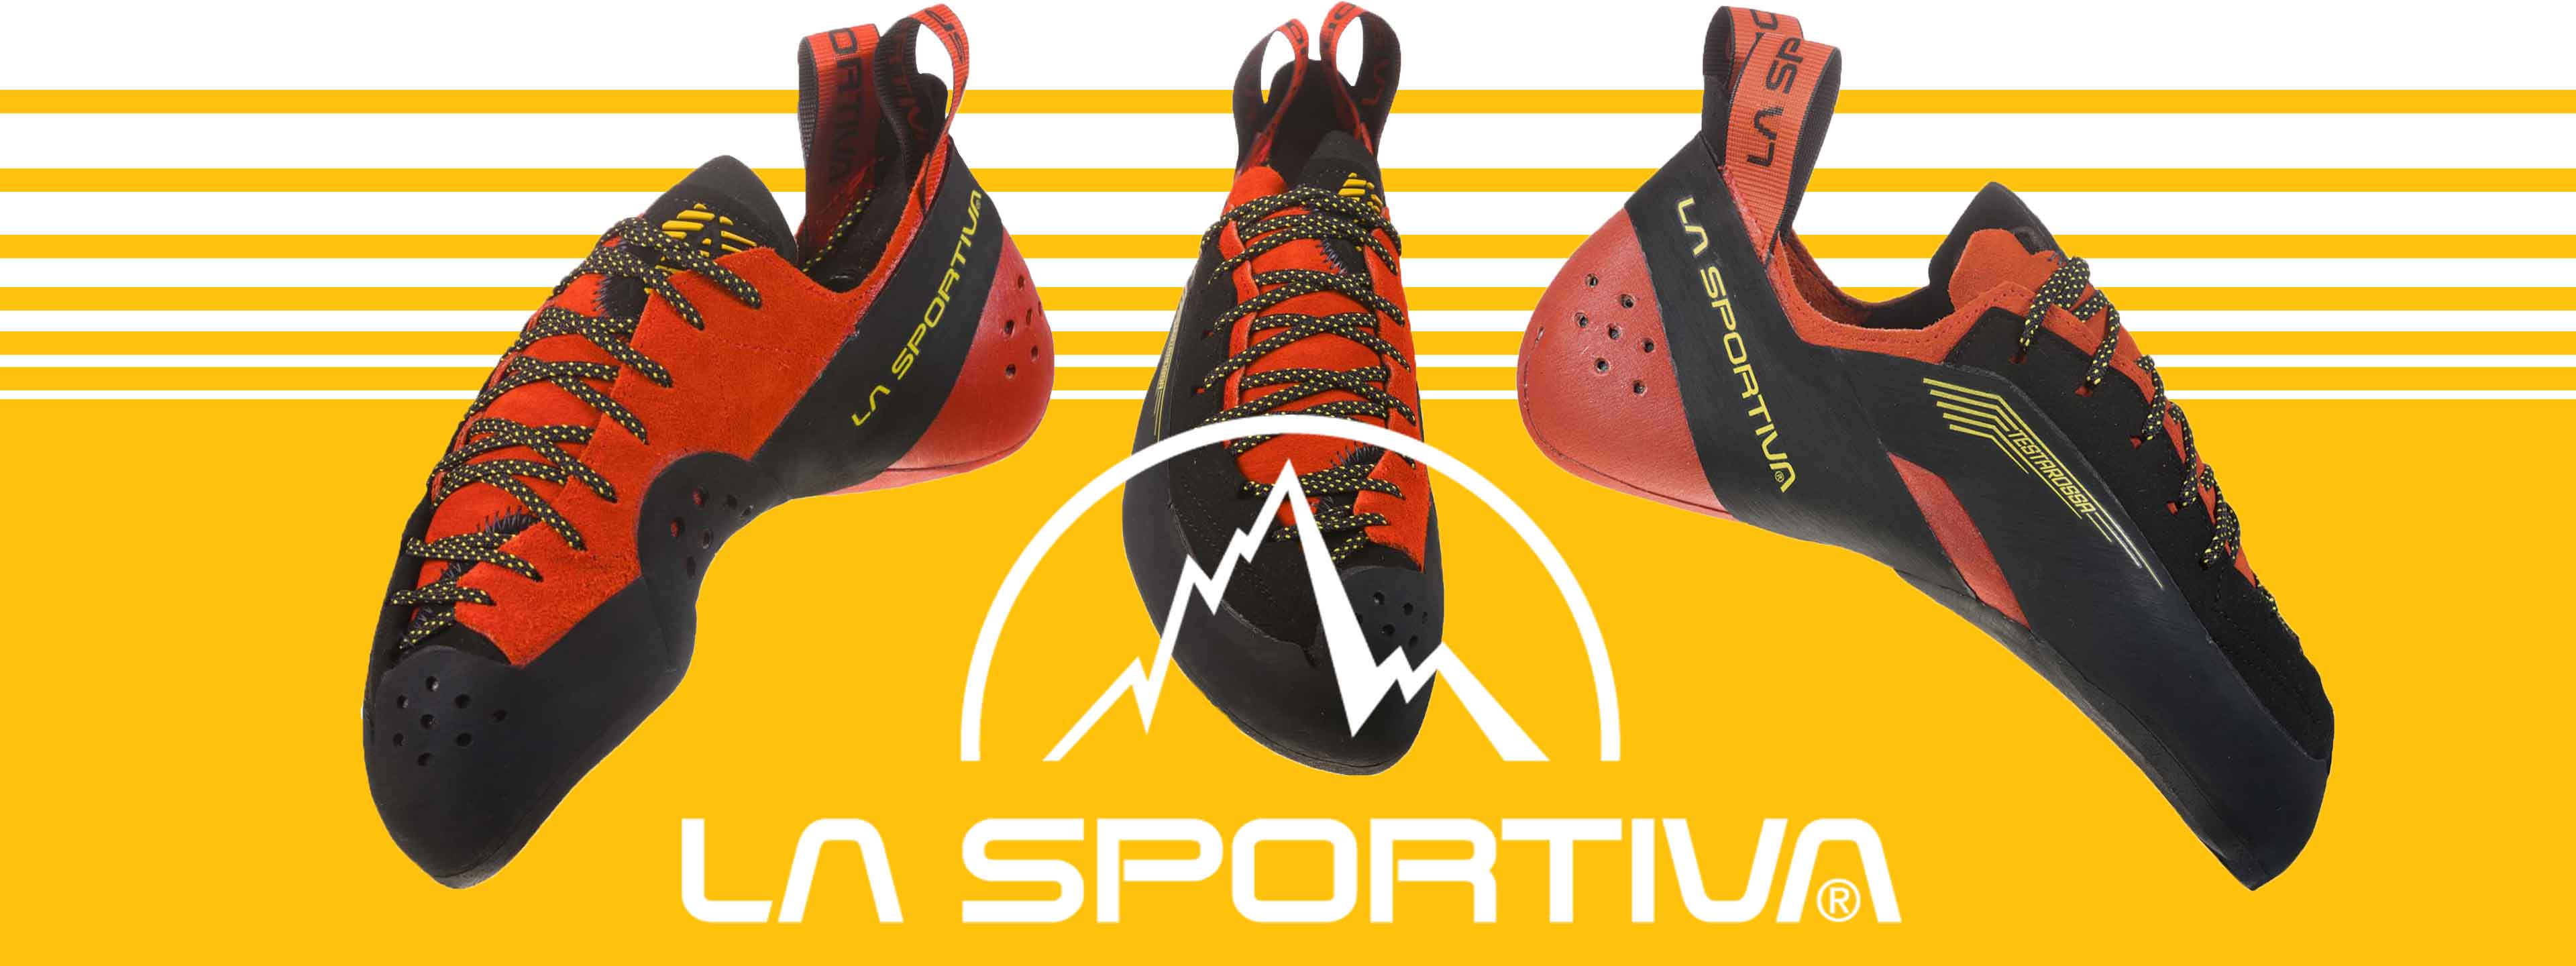 new la sportiva climbing shoes 2019